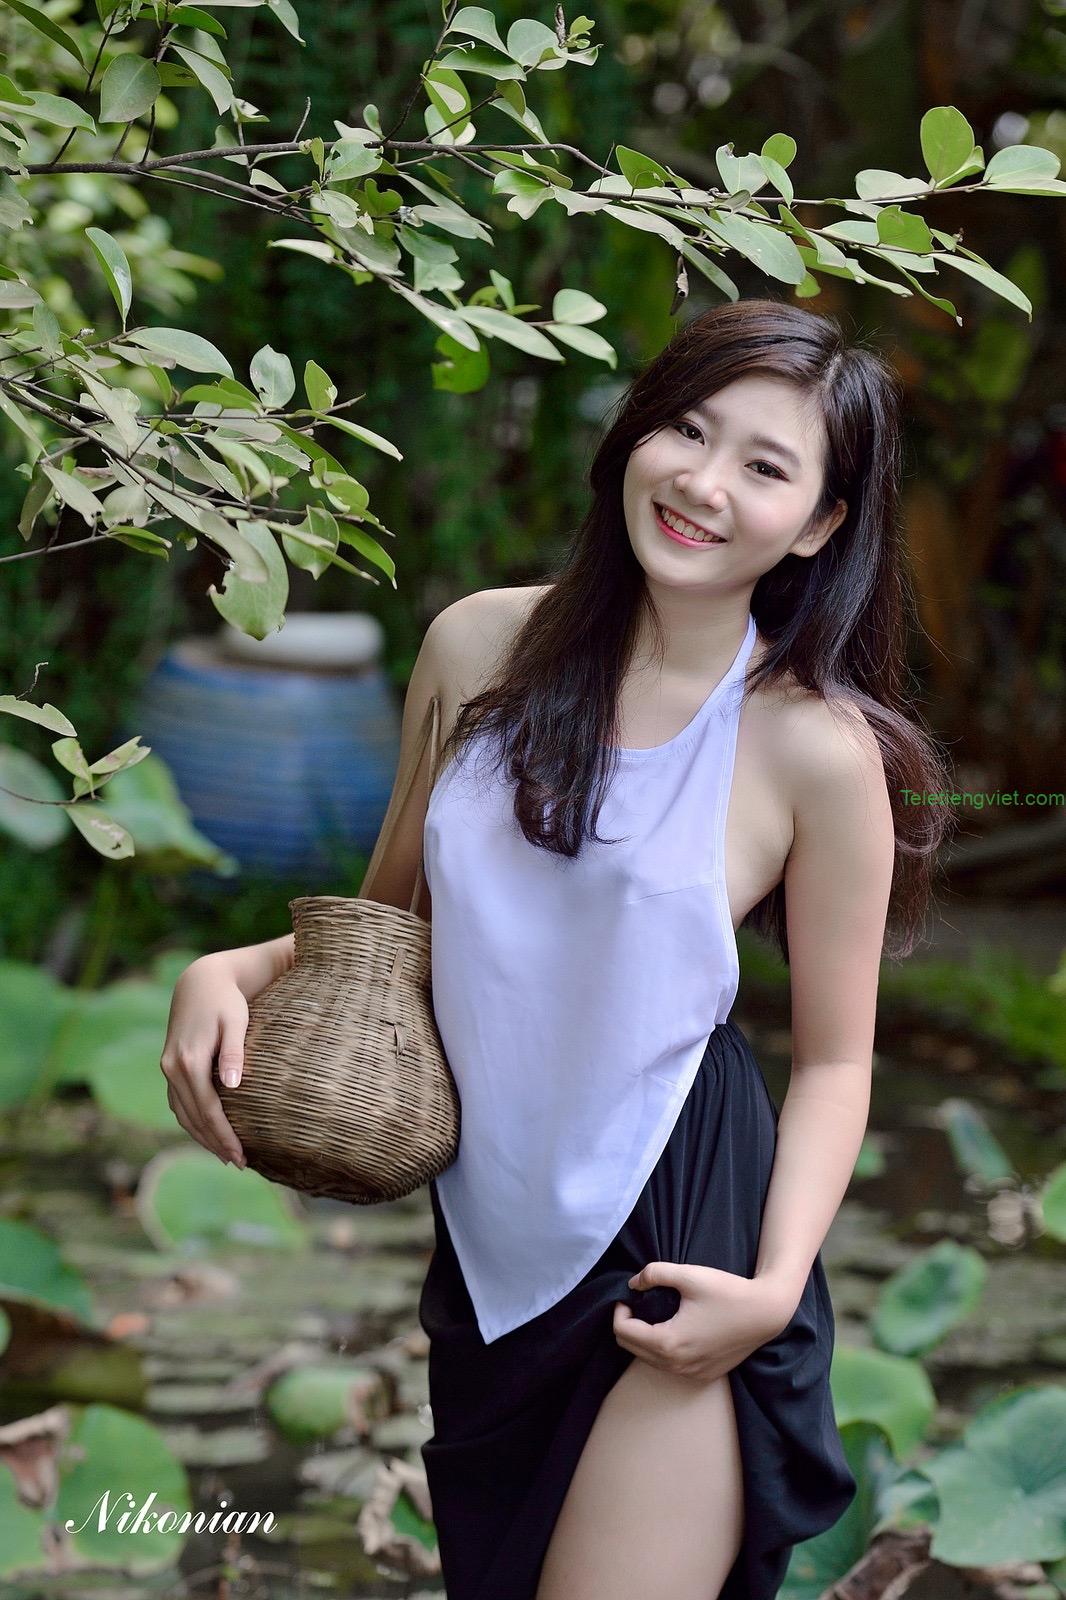 Loạt ảnh gái xinh Việt mặc áo yếm không nội y